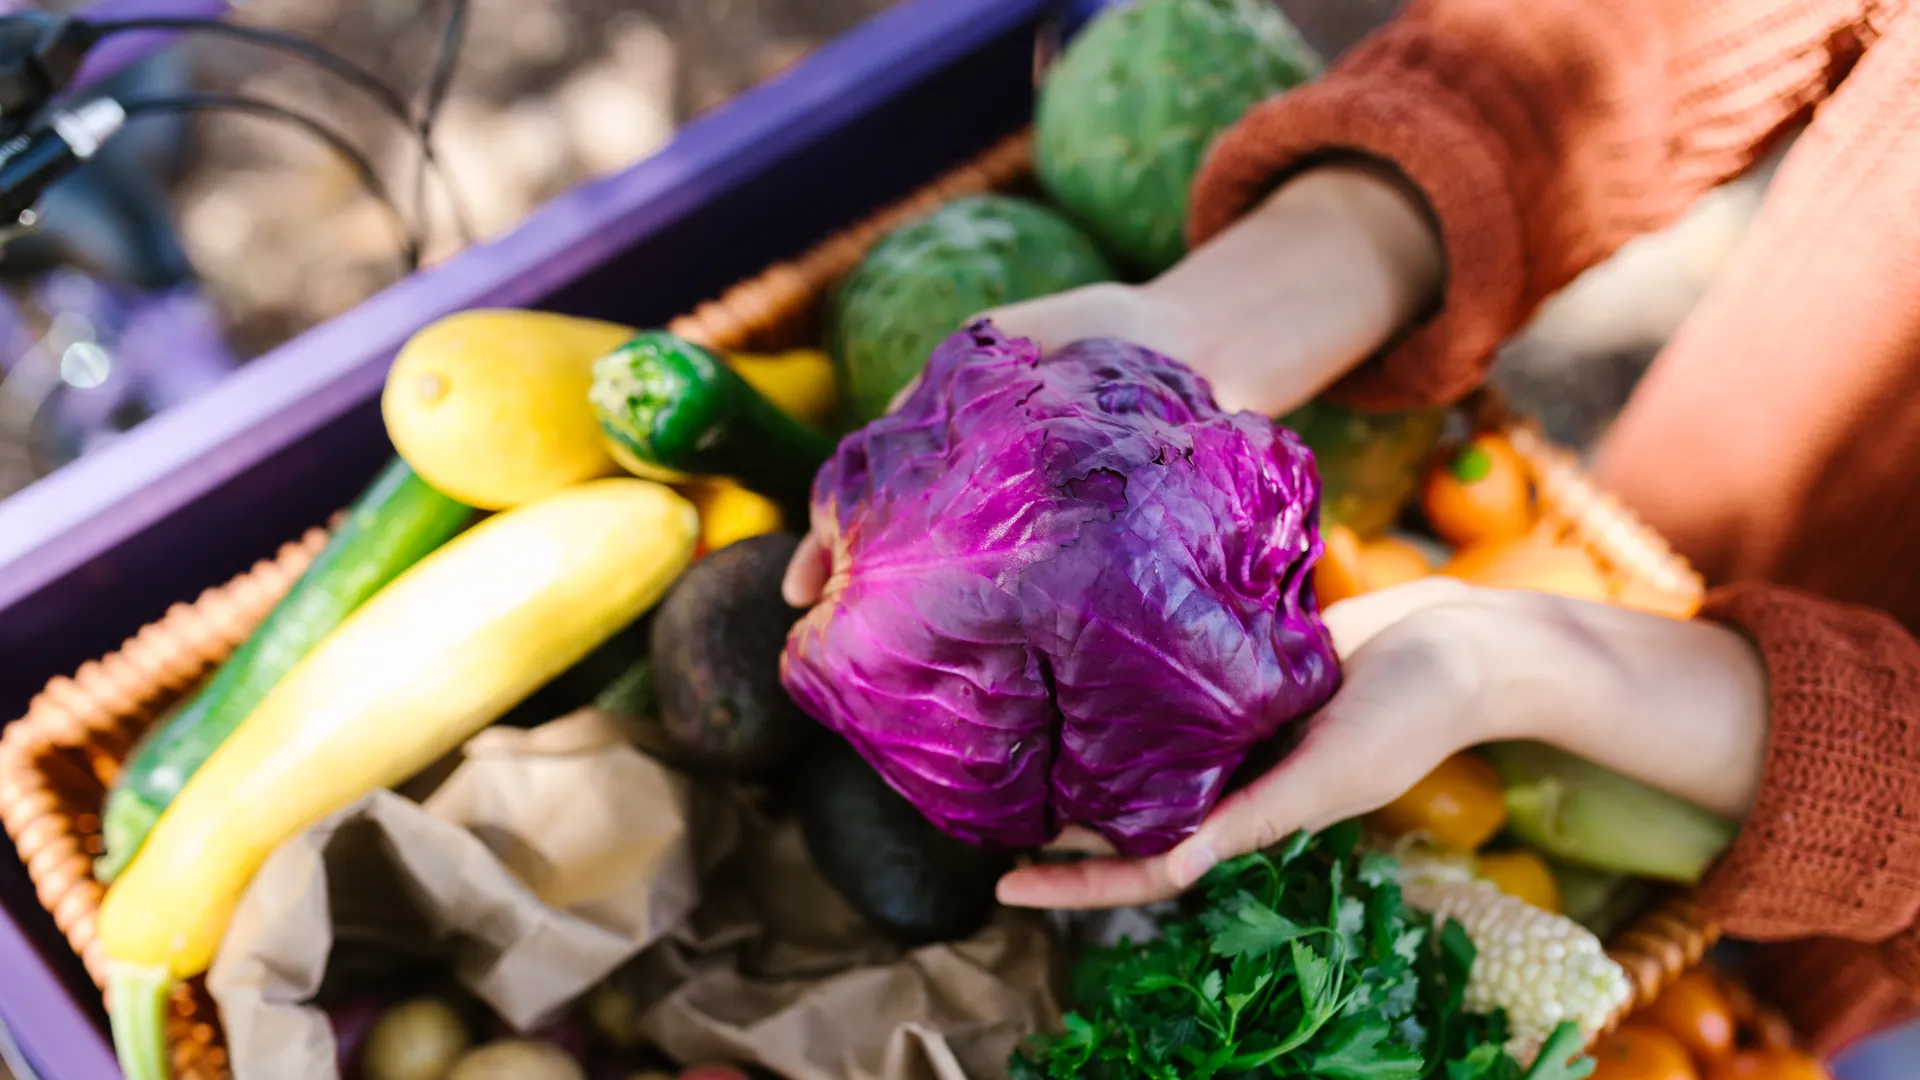 Wie myFoodDoctor dir dabei hilft, dich gesünder zu ernähren: Der Optimierungsbereich Gemüse